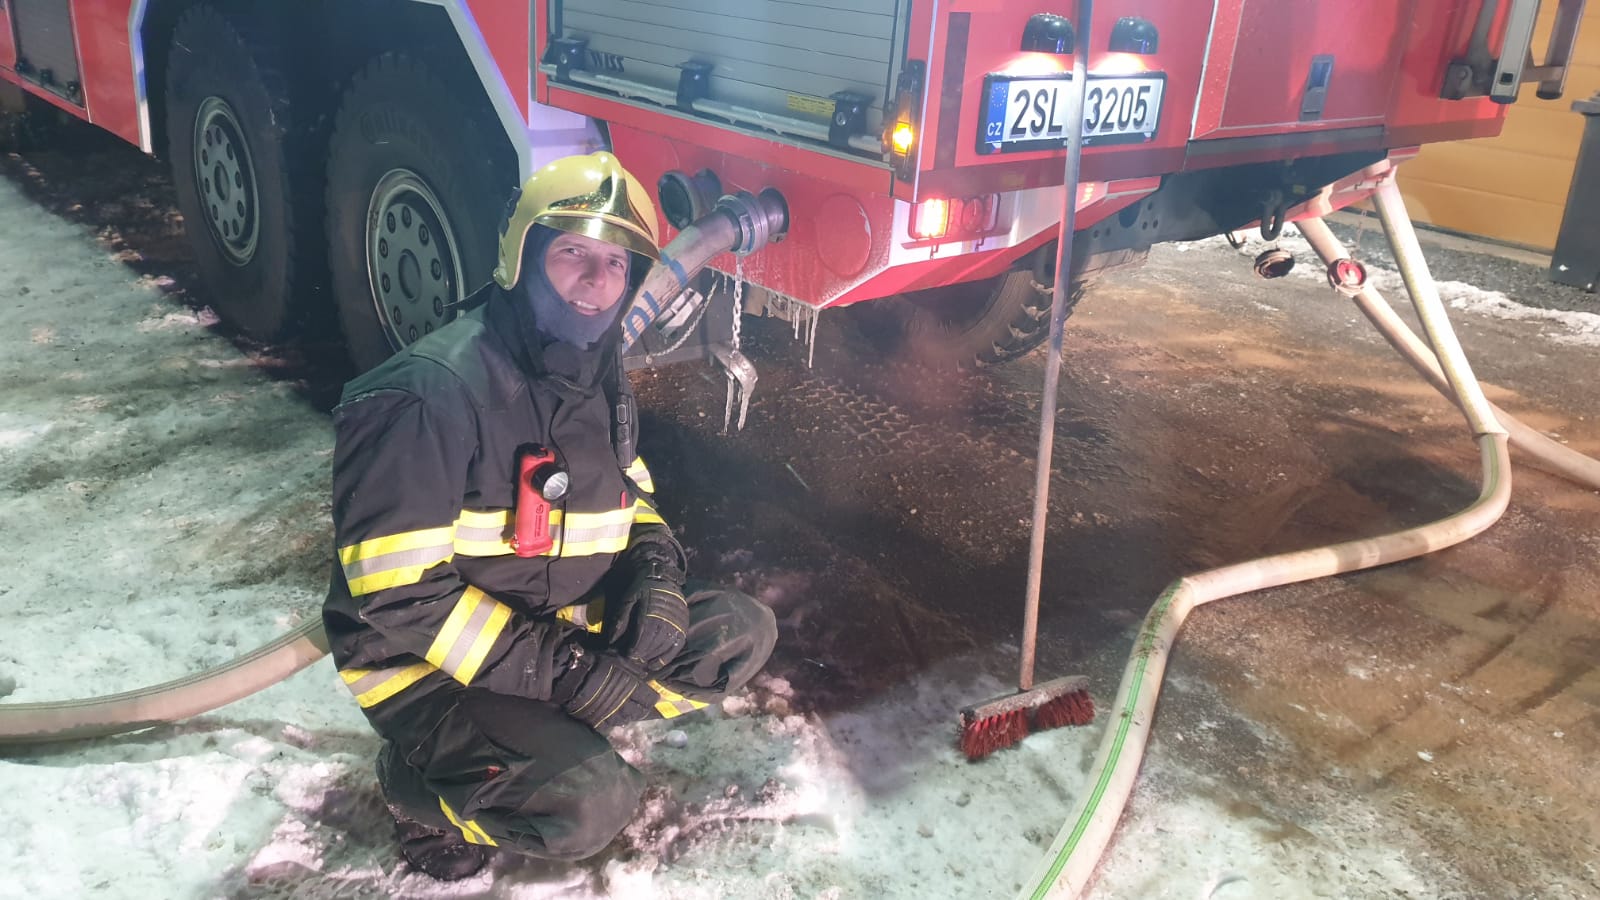 019-Práci hasičům komplikoval silný mráz.jpg